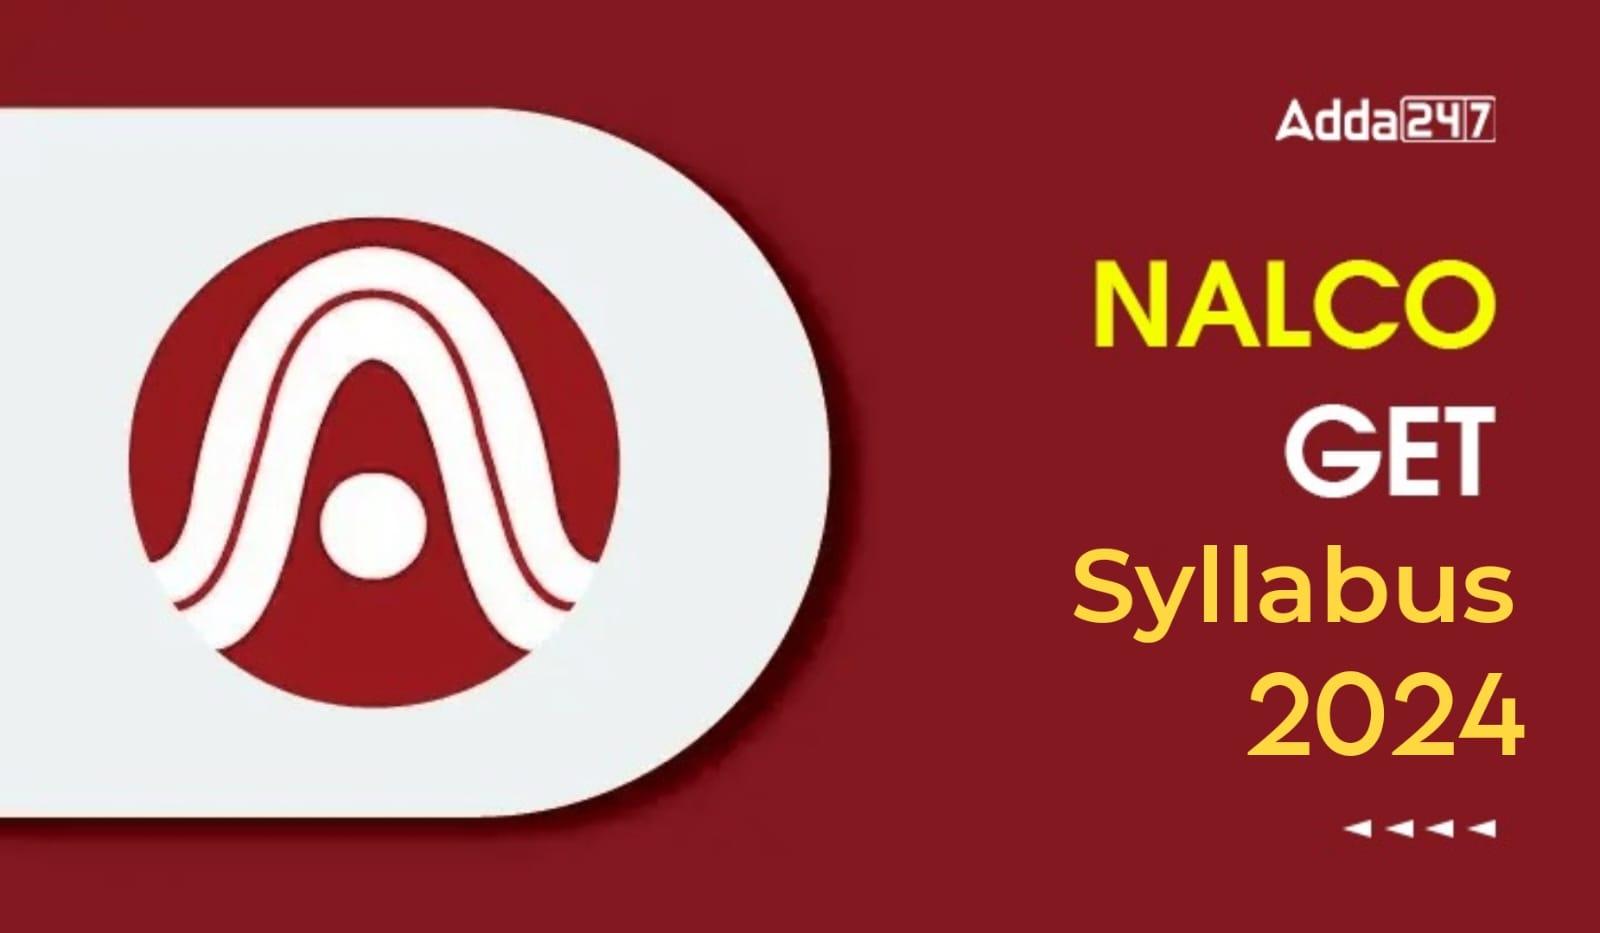 NALCO GET Syllabus 2024